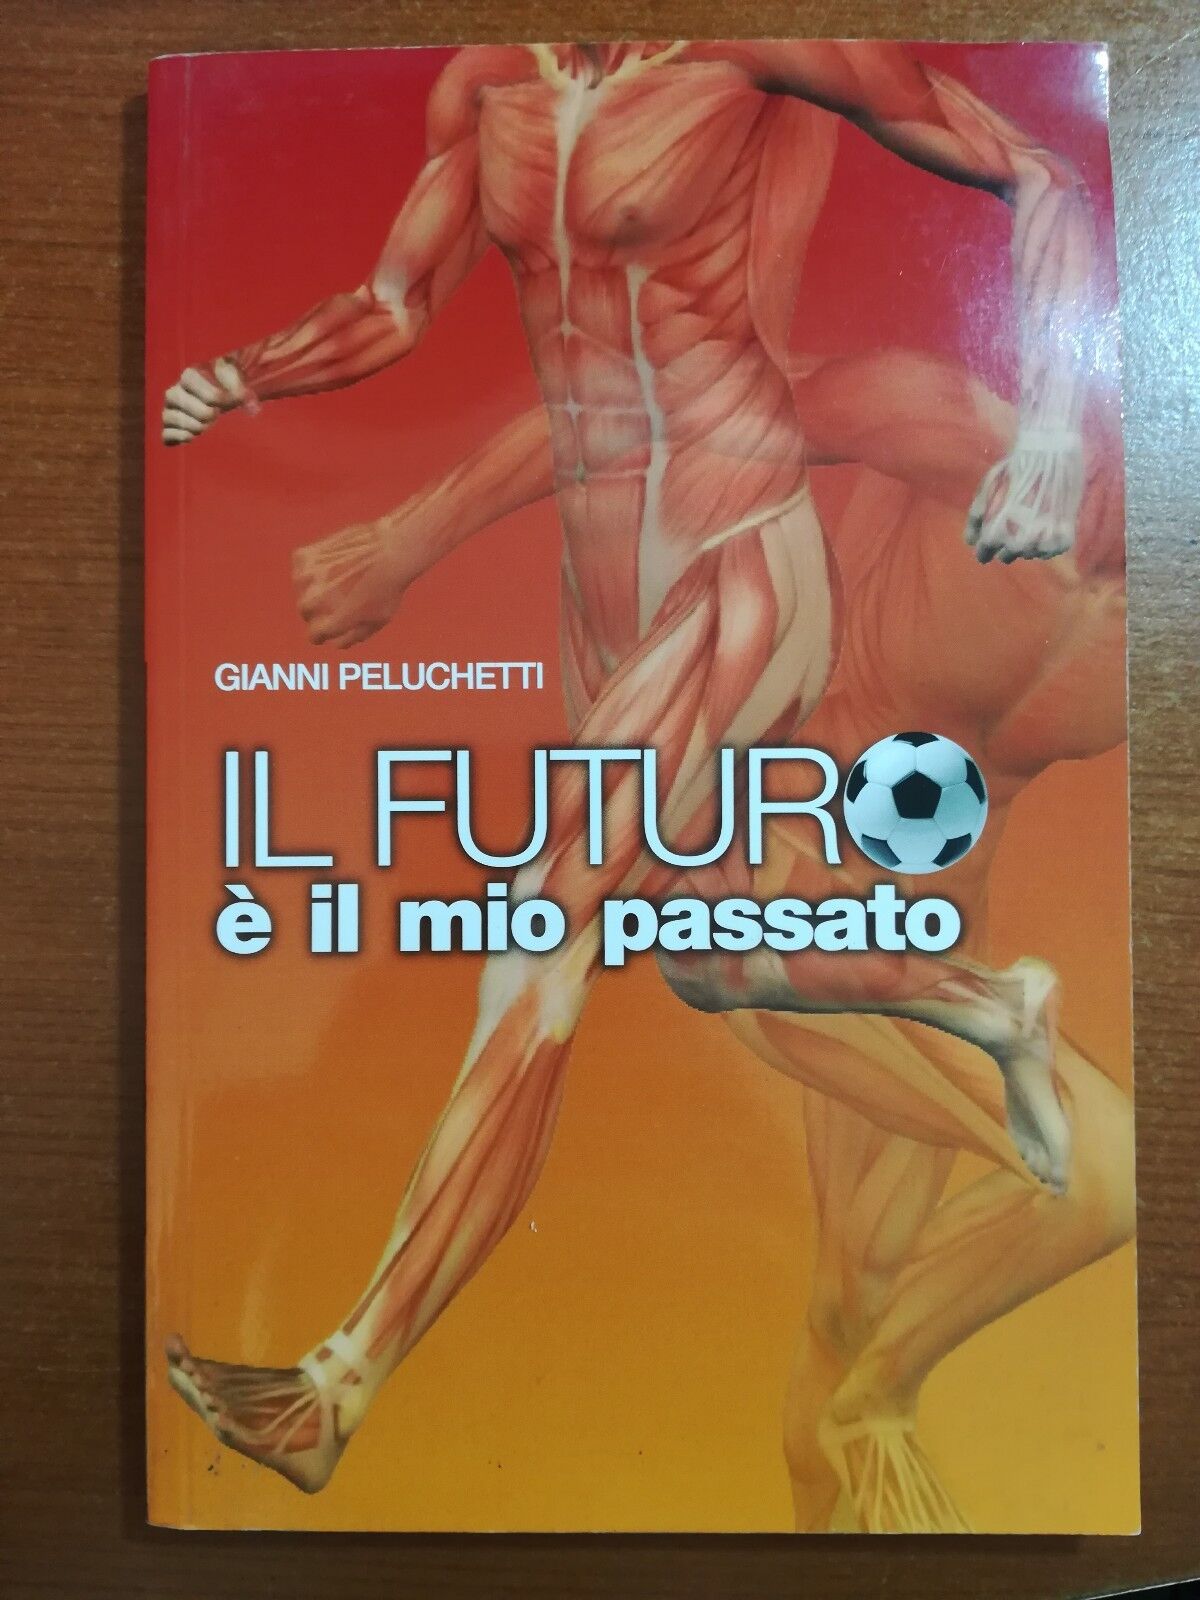 Il futuro ? il mio passato - Gianni Peluchetti - Camuna - 2012 - M